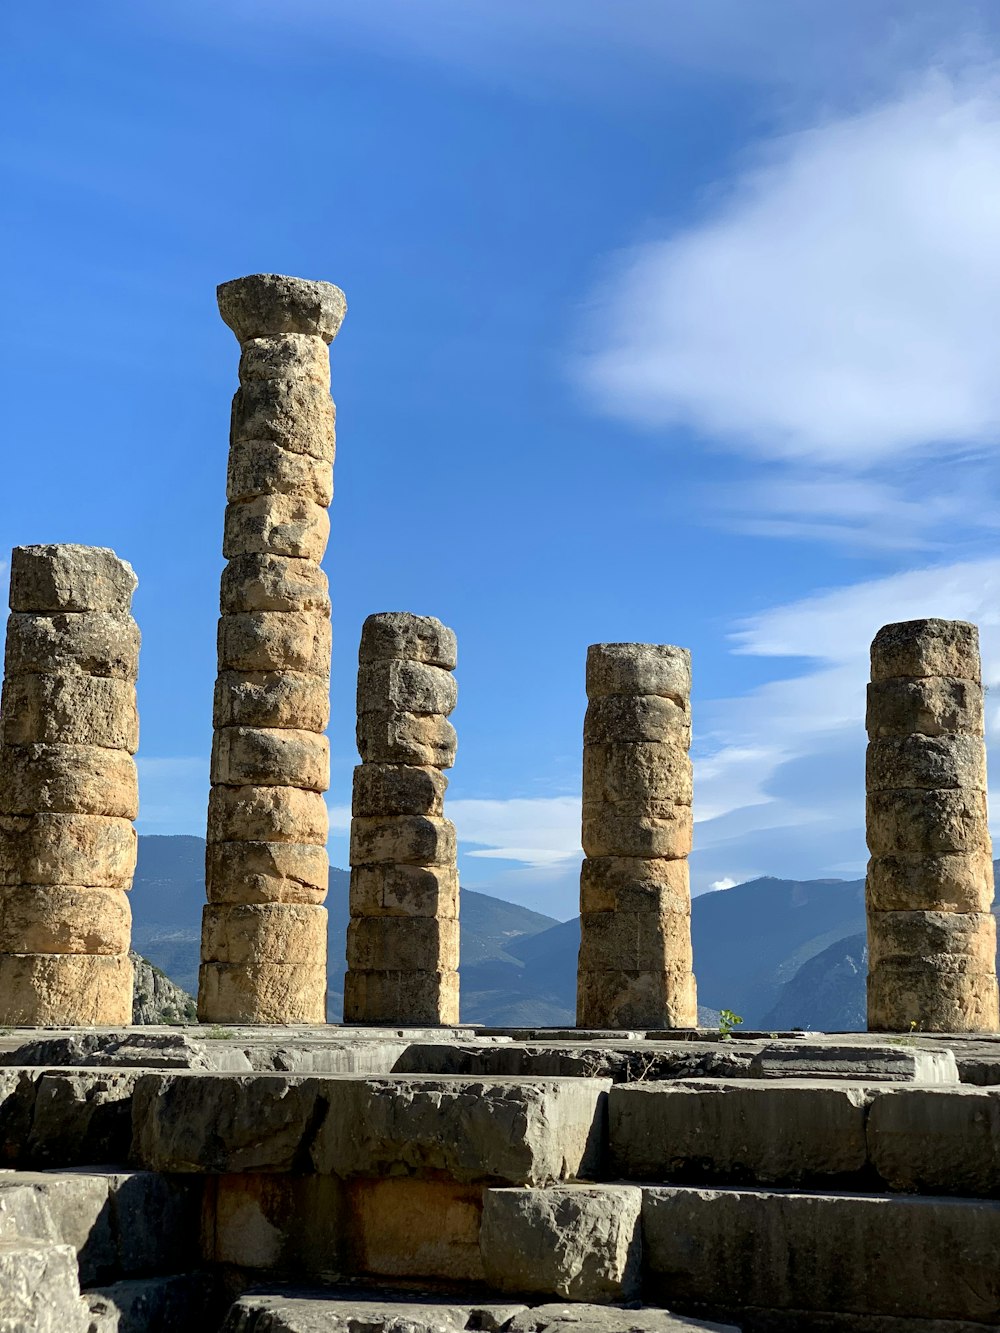 Una hilera de pilares de piedra sentados uno al lado del otro